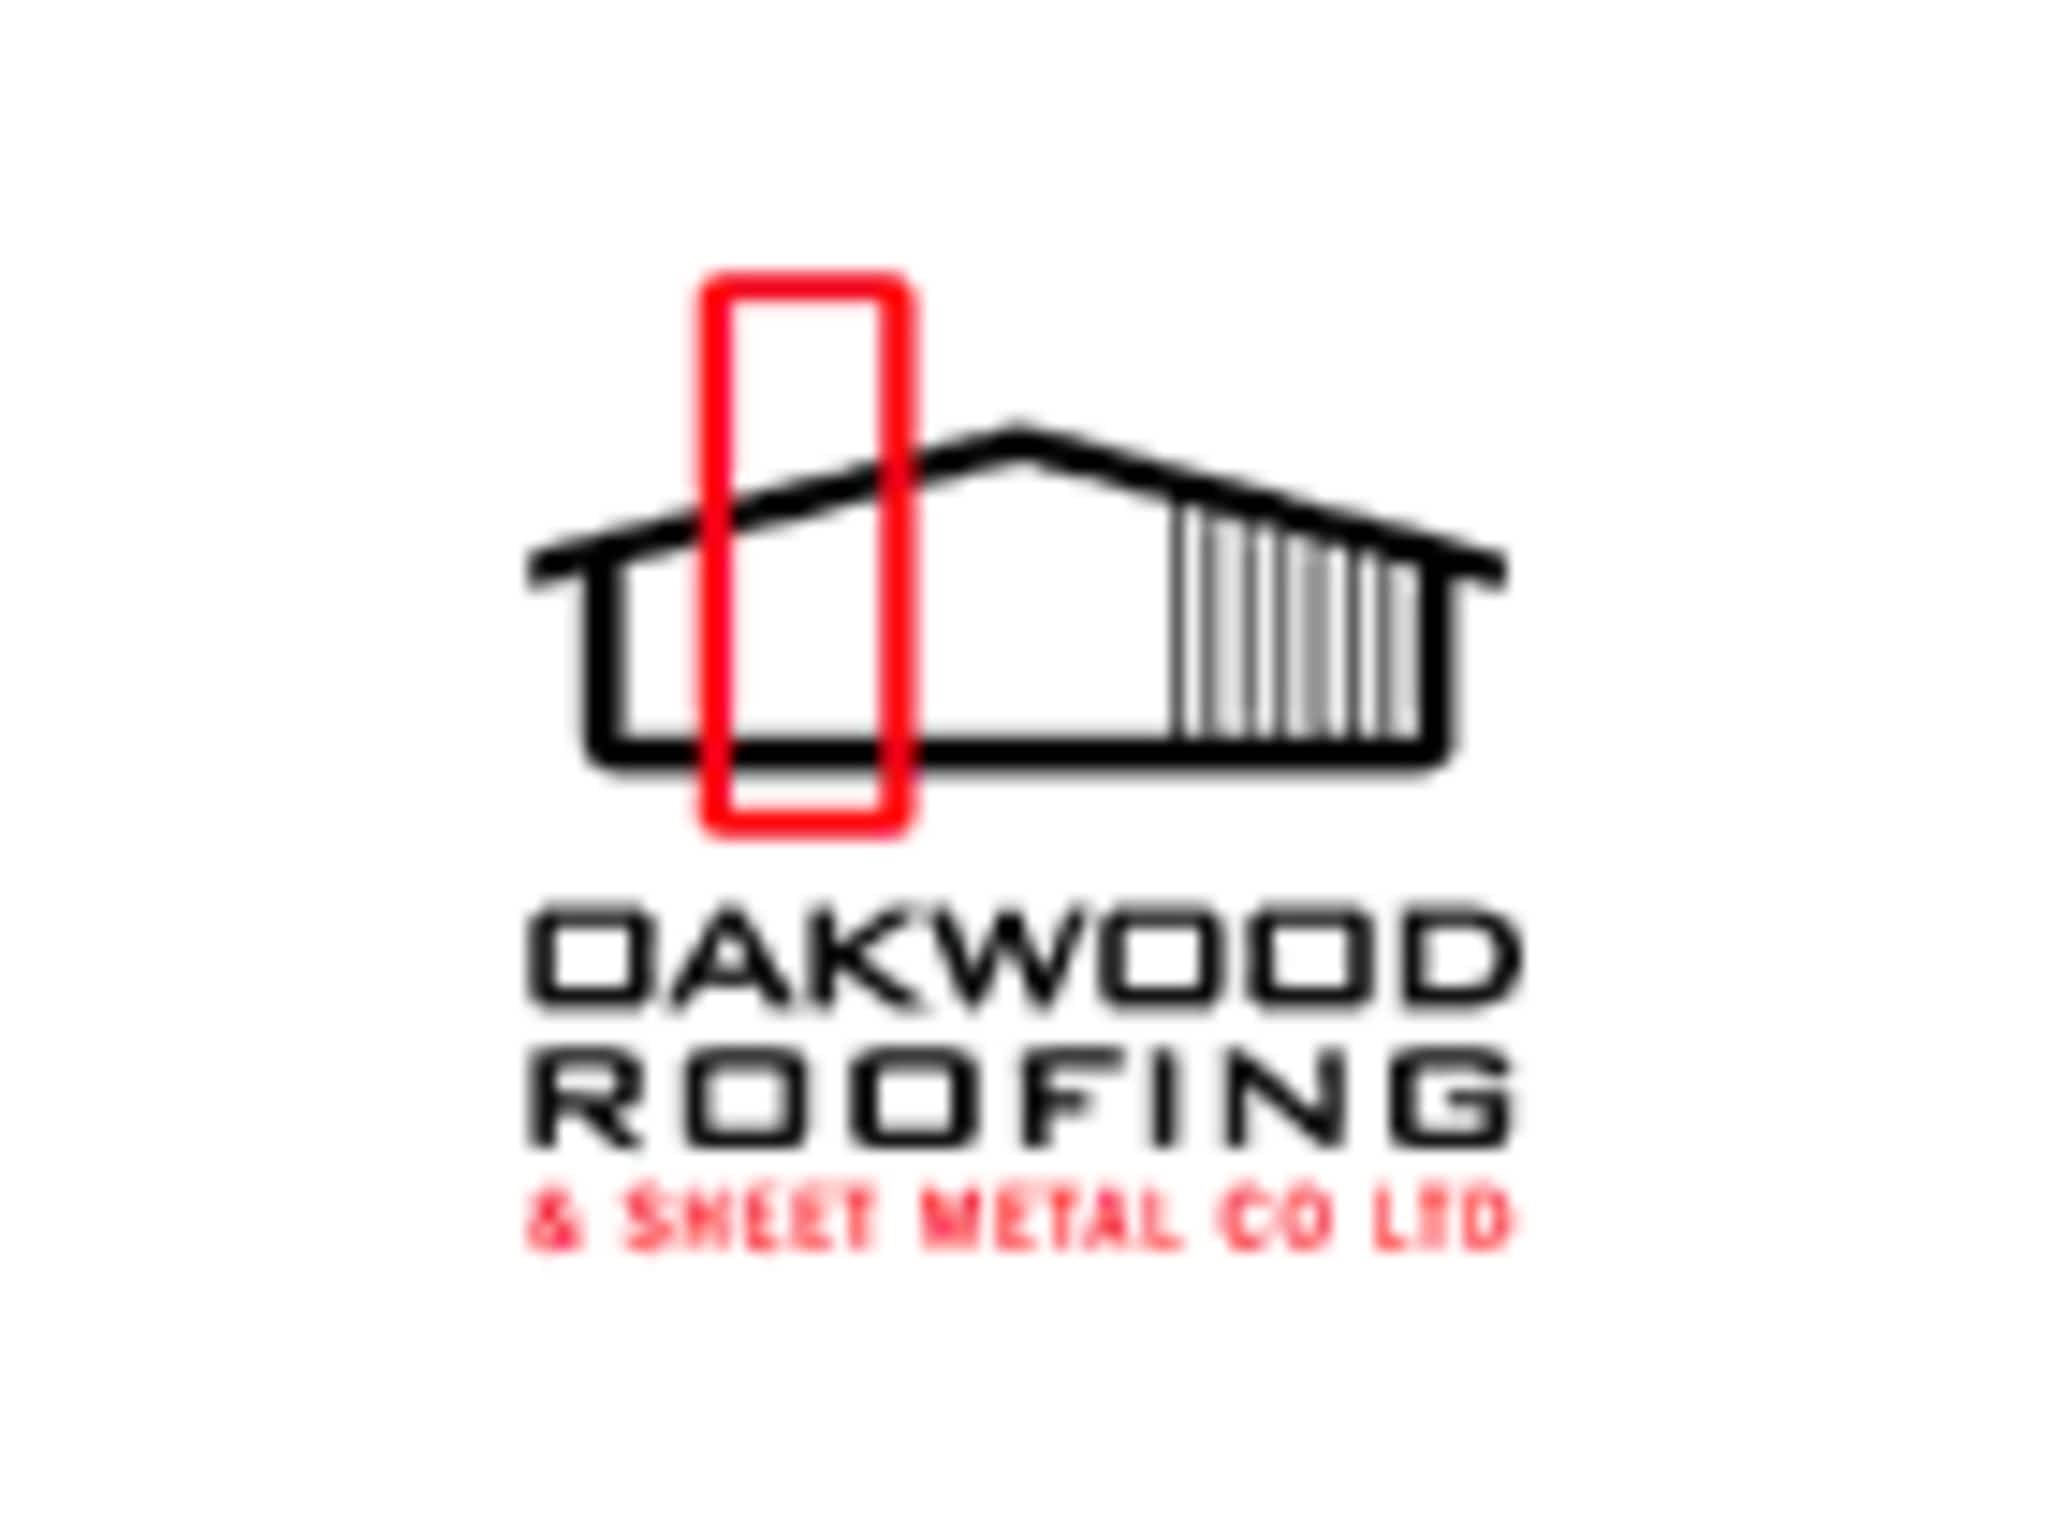 photo Oakwood Roofing & Sheet Metal Co Ltd